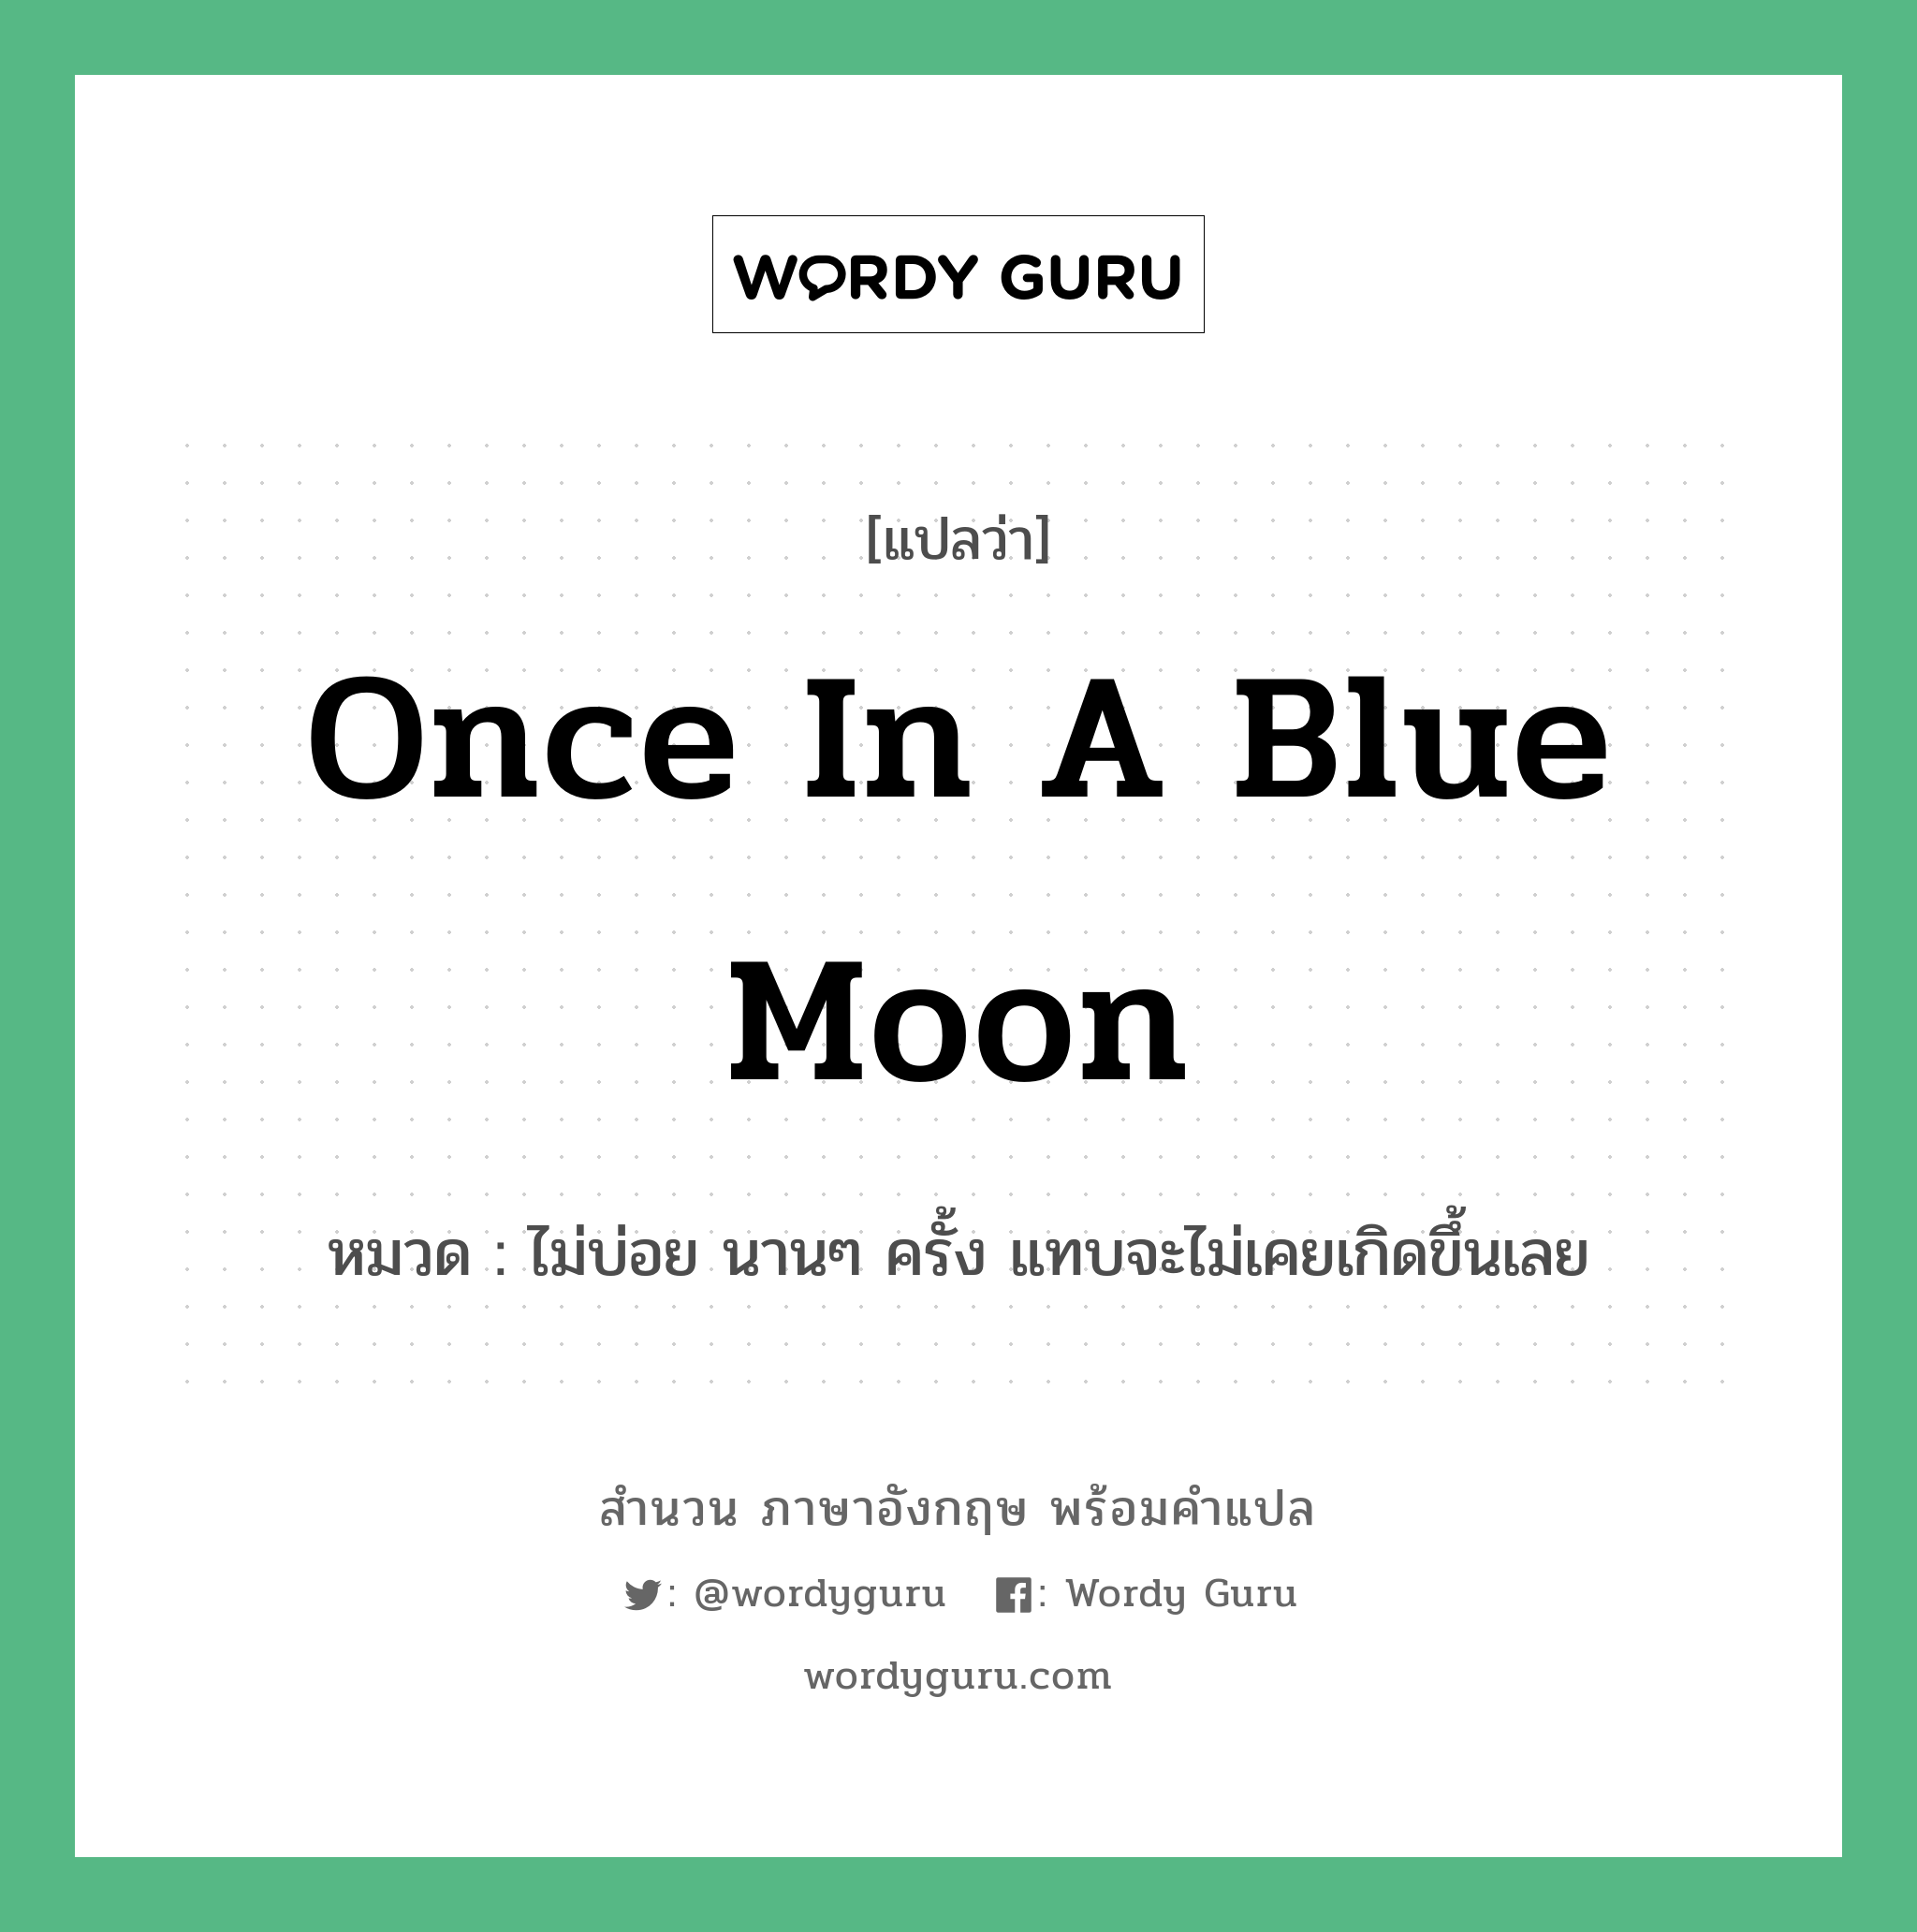 Once in a blue moon แปลว่า?, สำนวนภาษาอังกฤษ Once in a blue moon หมวด ไม่บ่อย นานๆ ครั้ง แทบจะไม่เคยเกิดขึ้นเลย